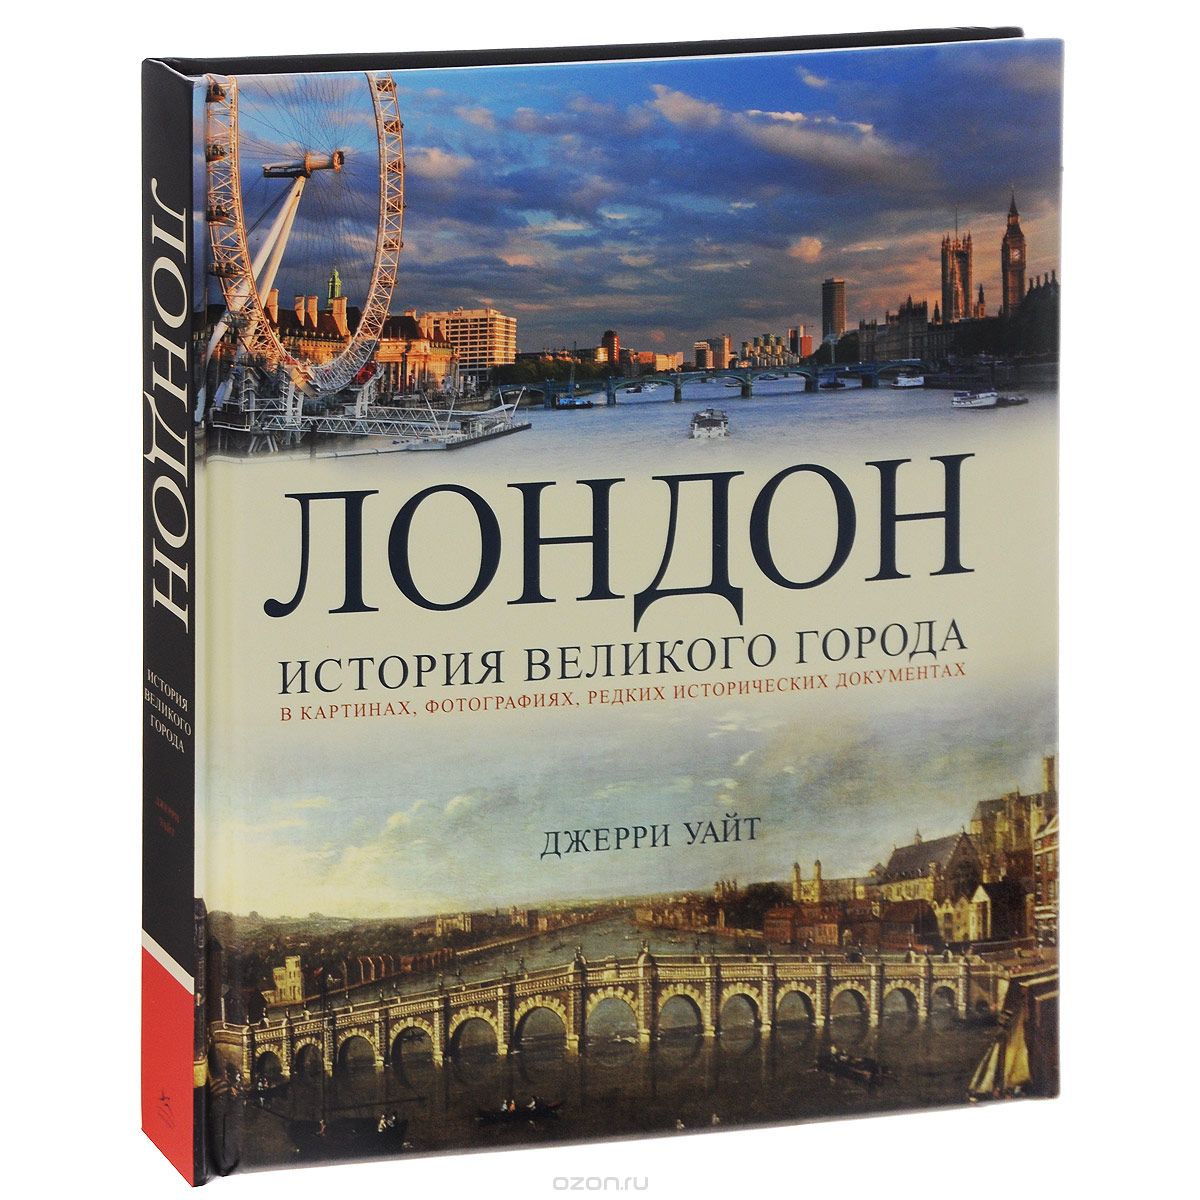 Скачать книгу "Лондон. История великого города в картинках, фотографиях, редких исторических документах, Джерри Уайт"